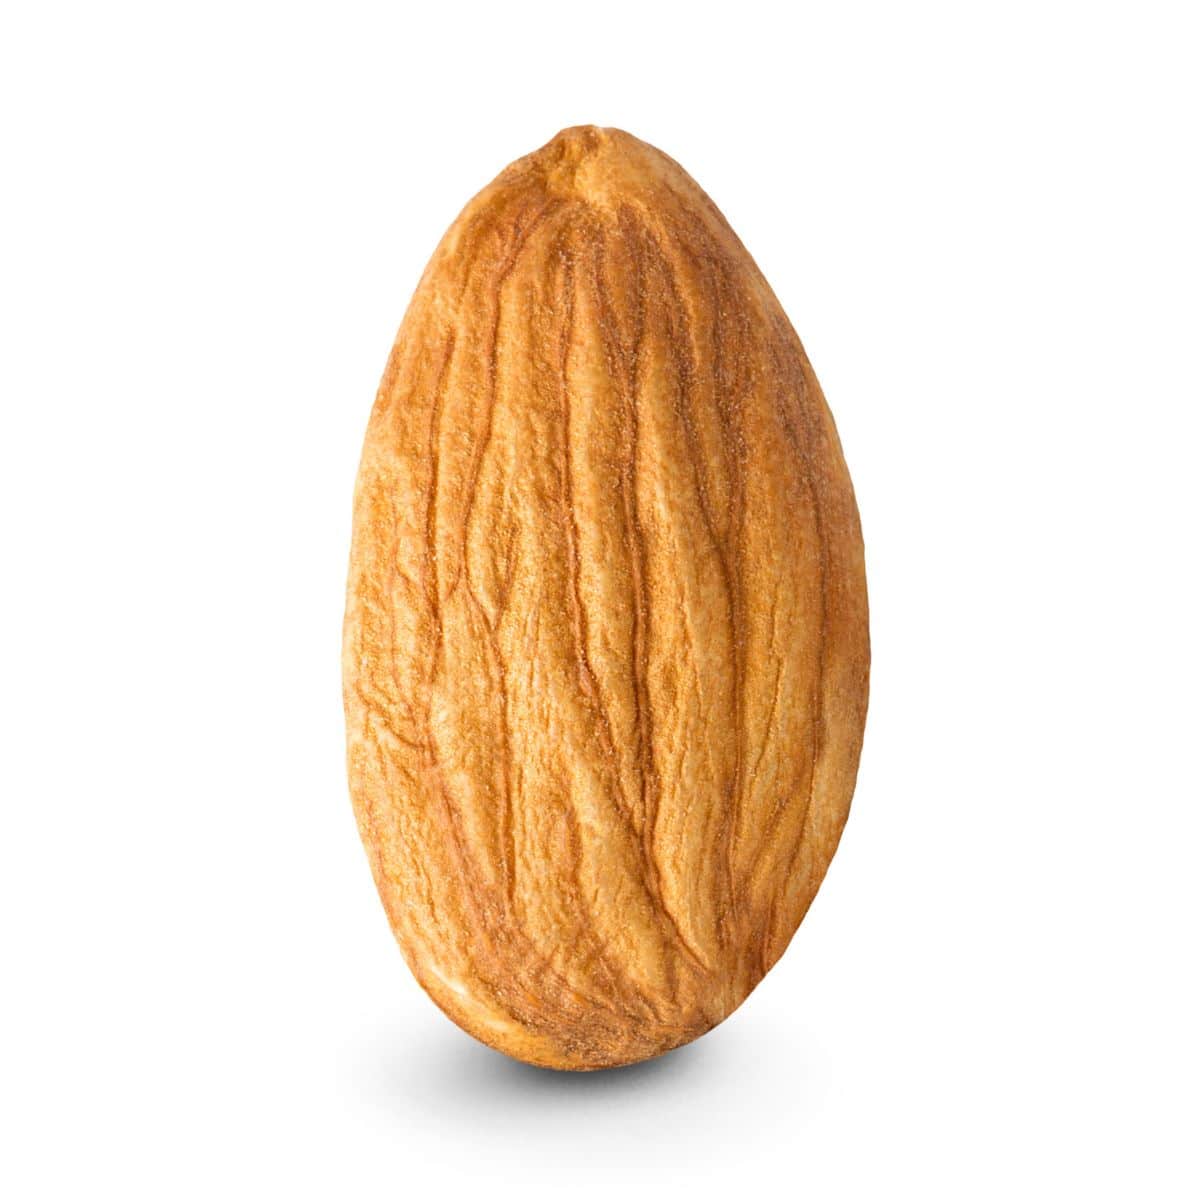 A single nonpareil almond on a white background.